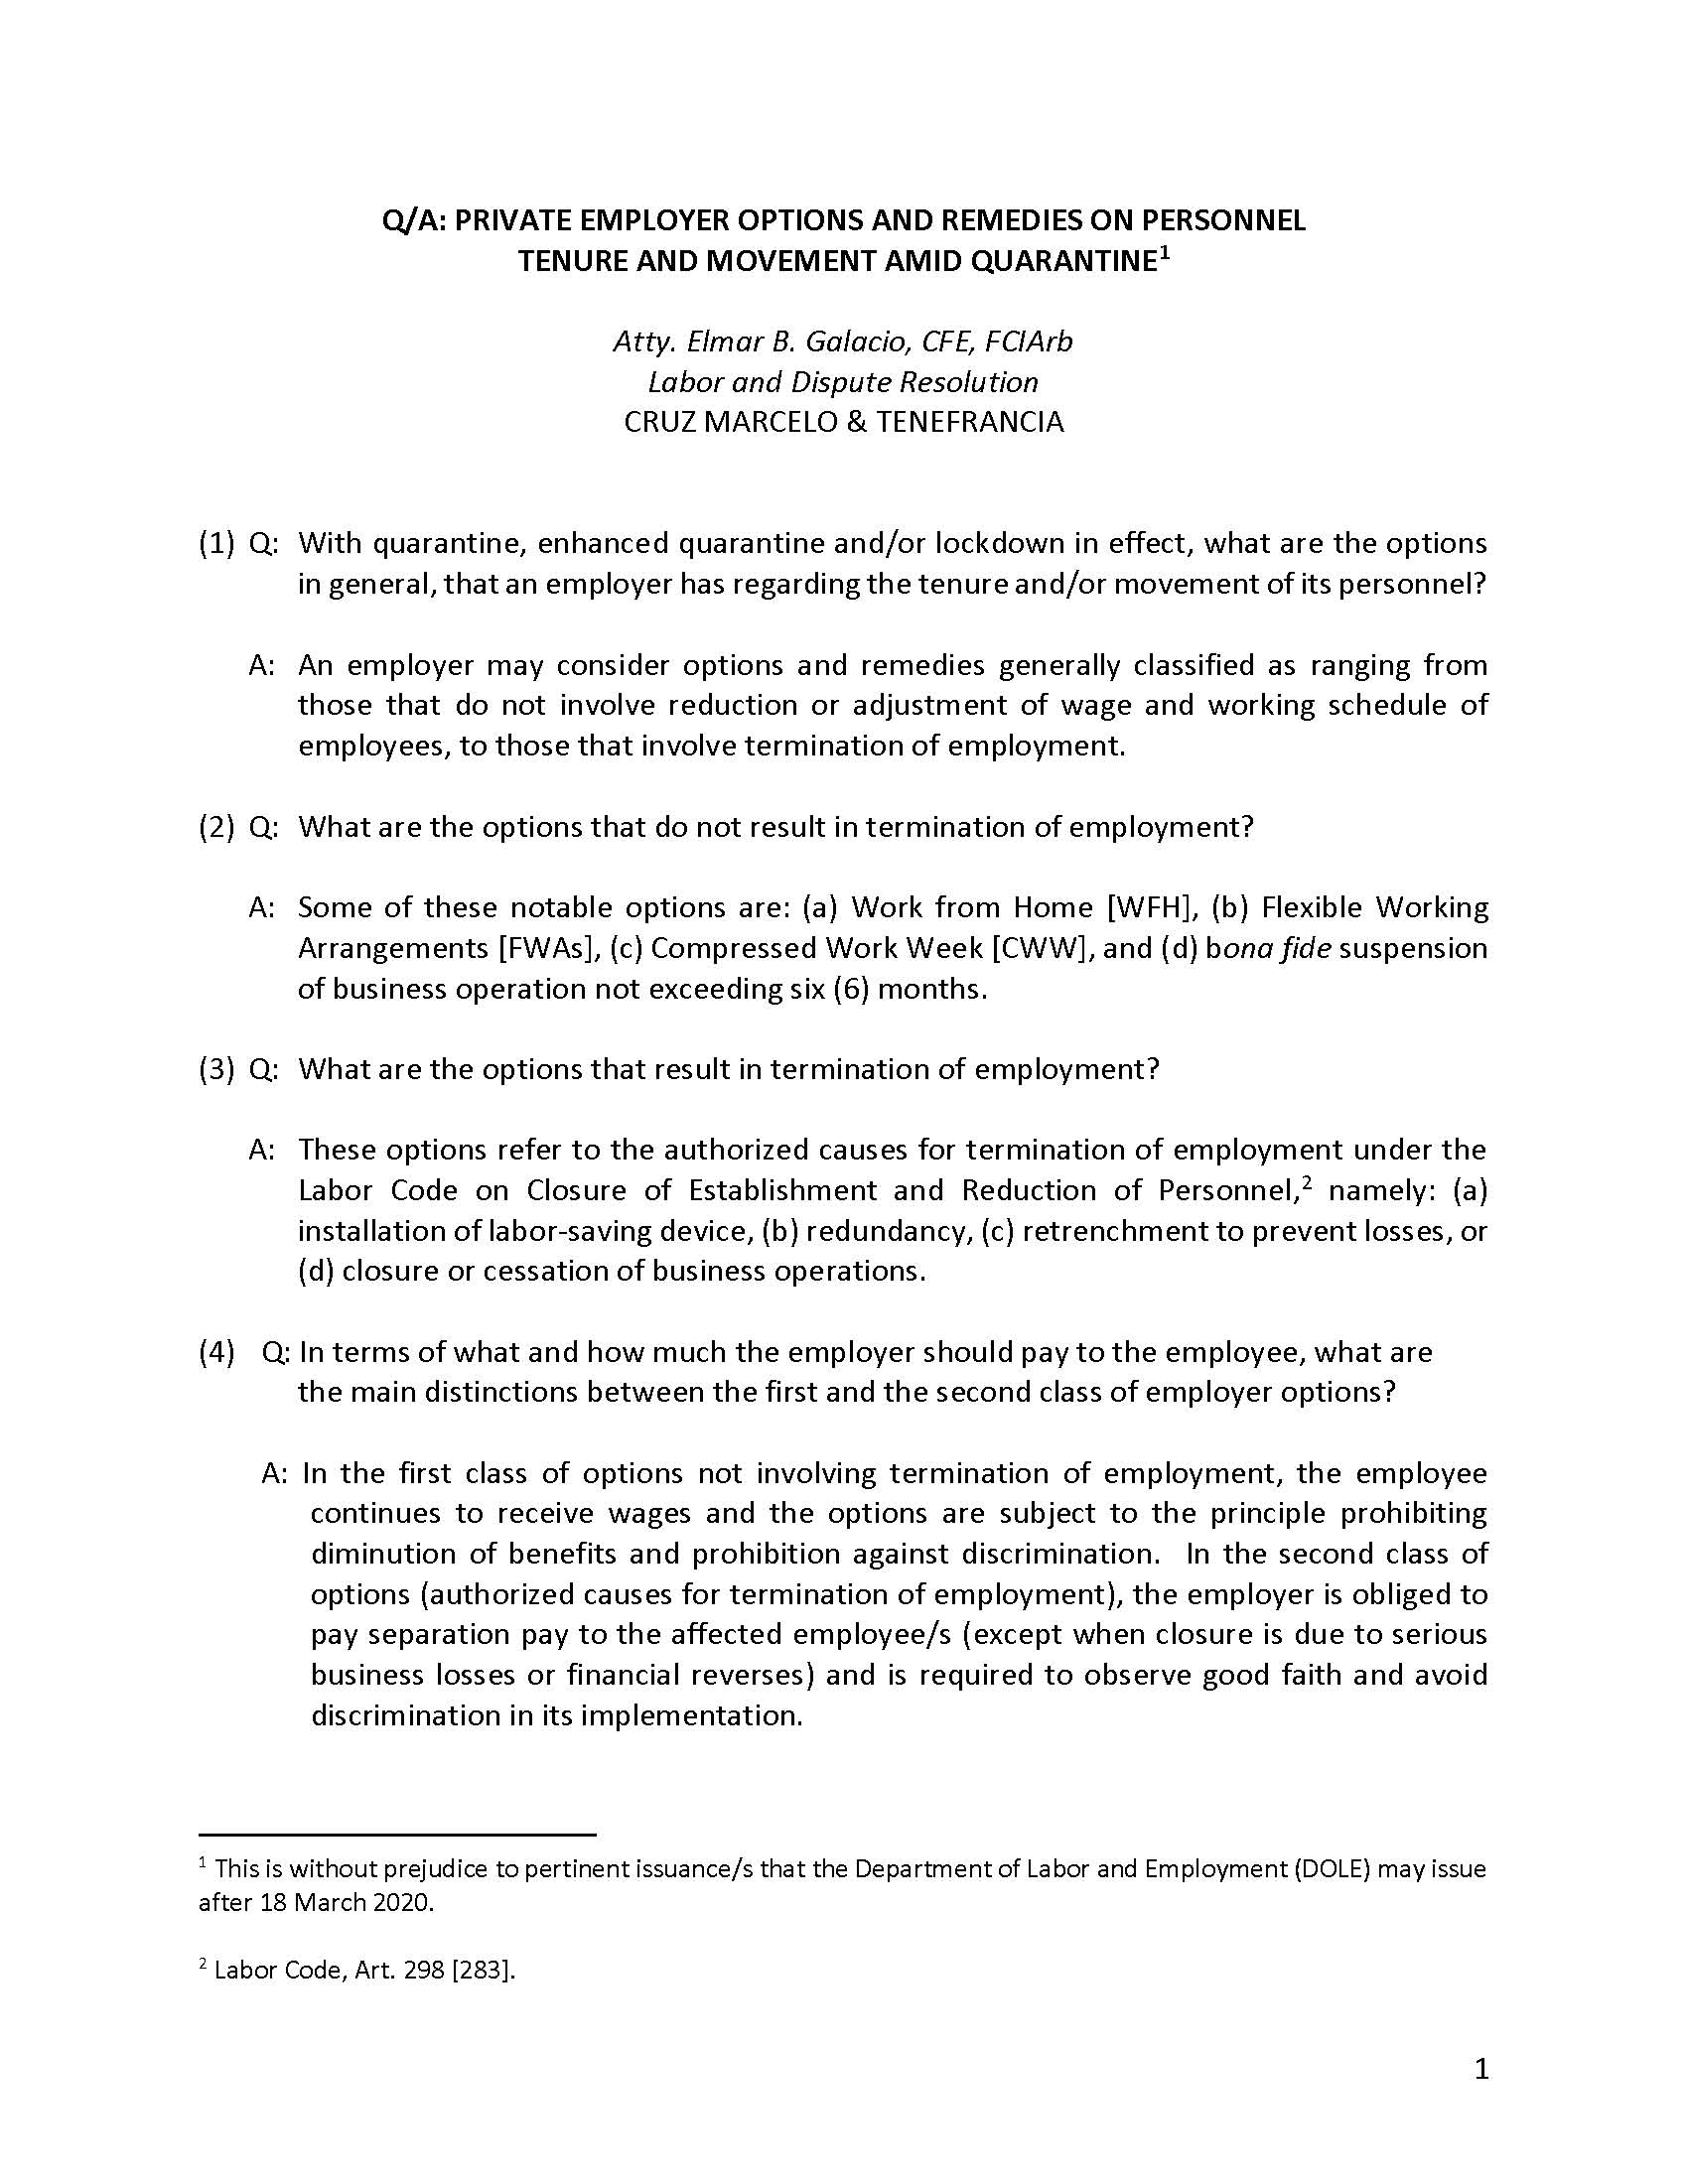 Employer Options amid Quarantine FAQ by Atty. Elmar Galacio 1 Page 01